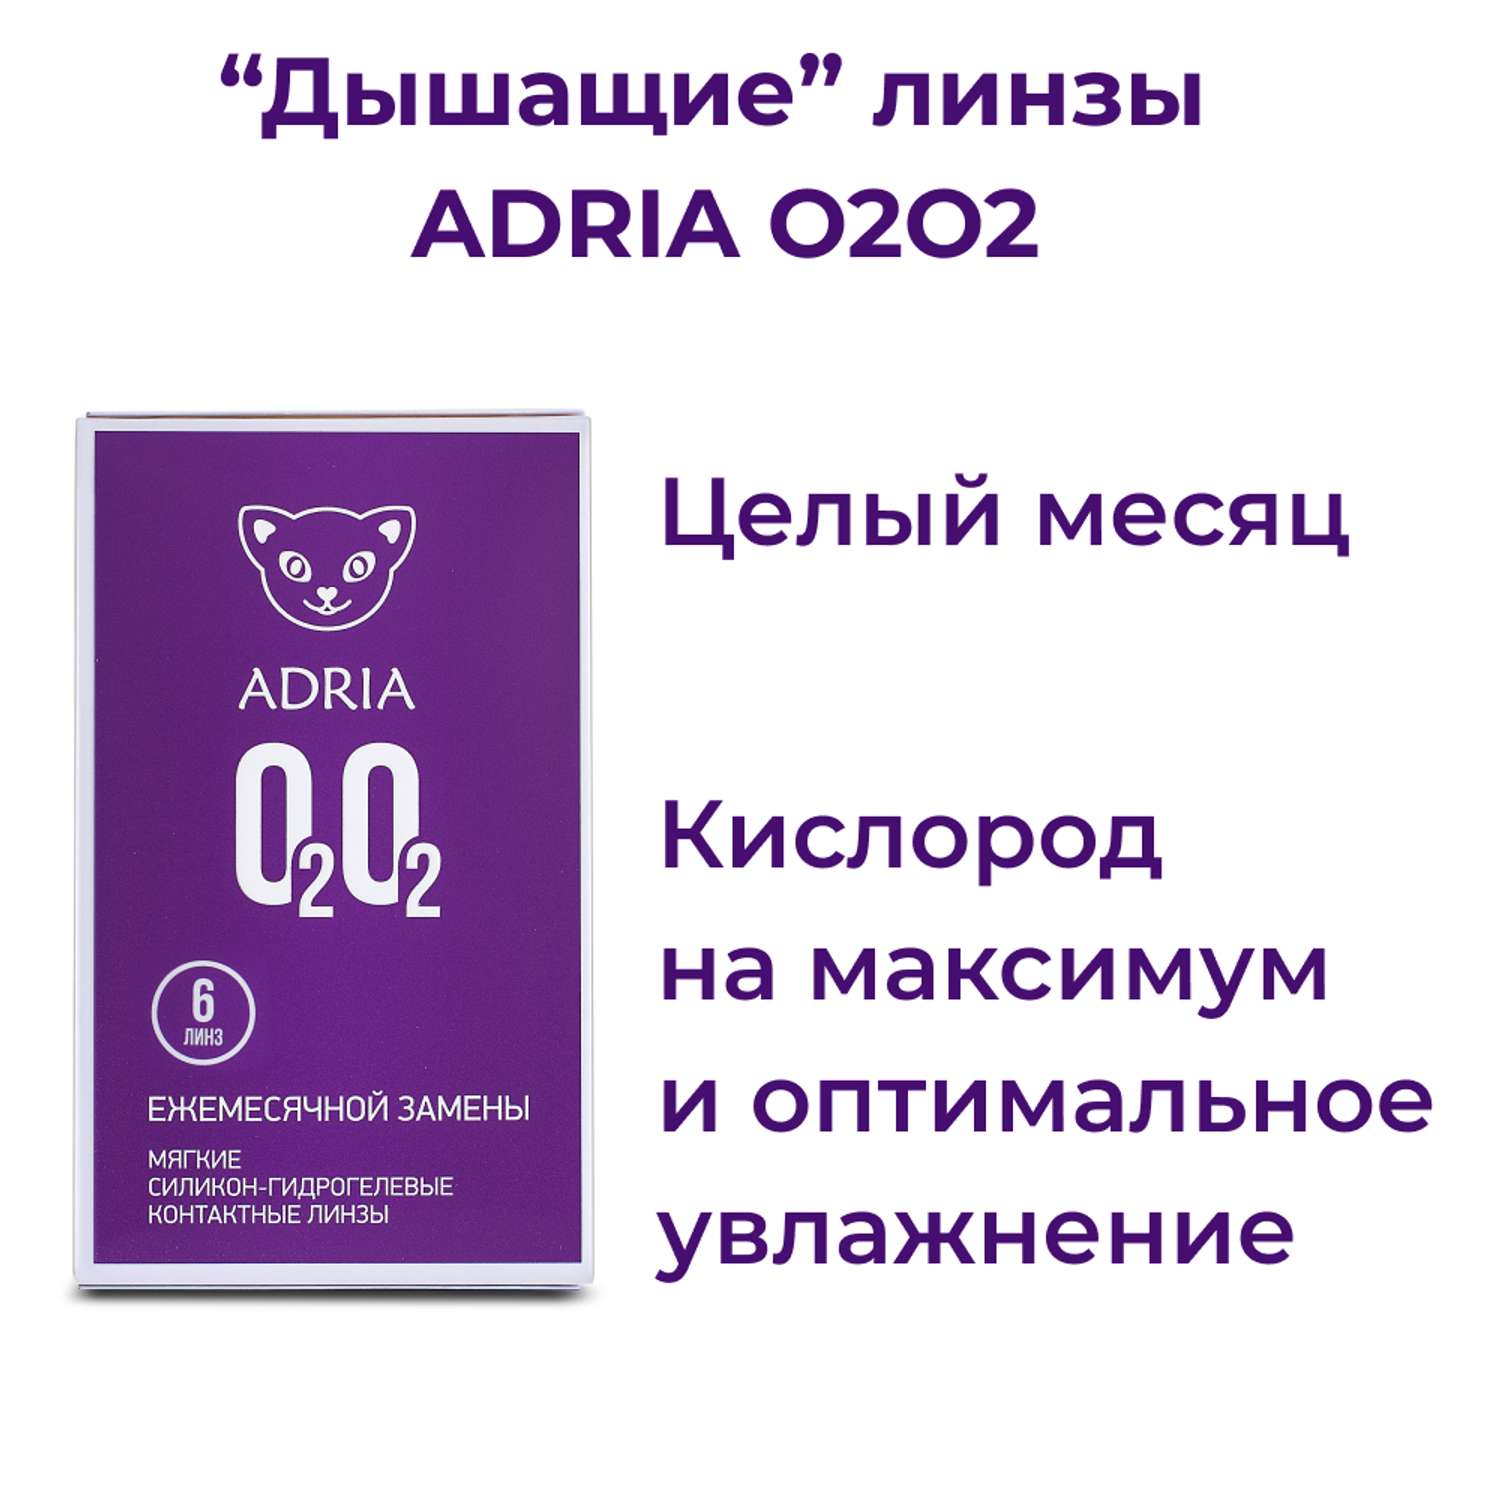 Контактные линзы ADRIA O2O2 6 линз R 8.6 -4.75 - фото 2